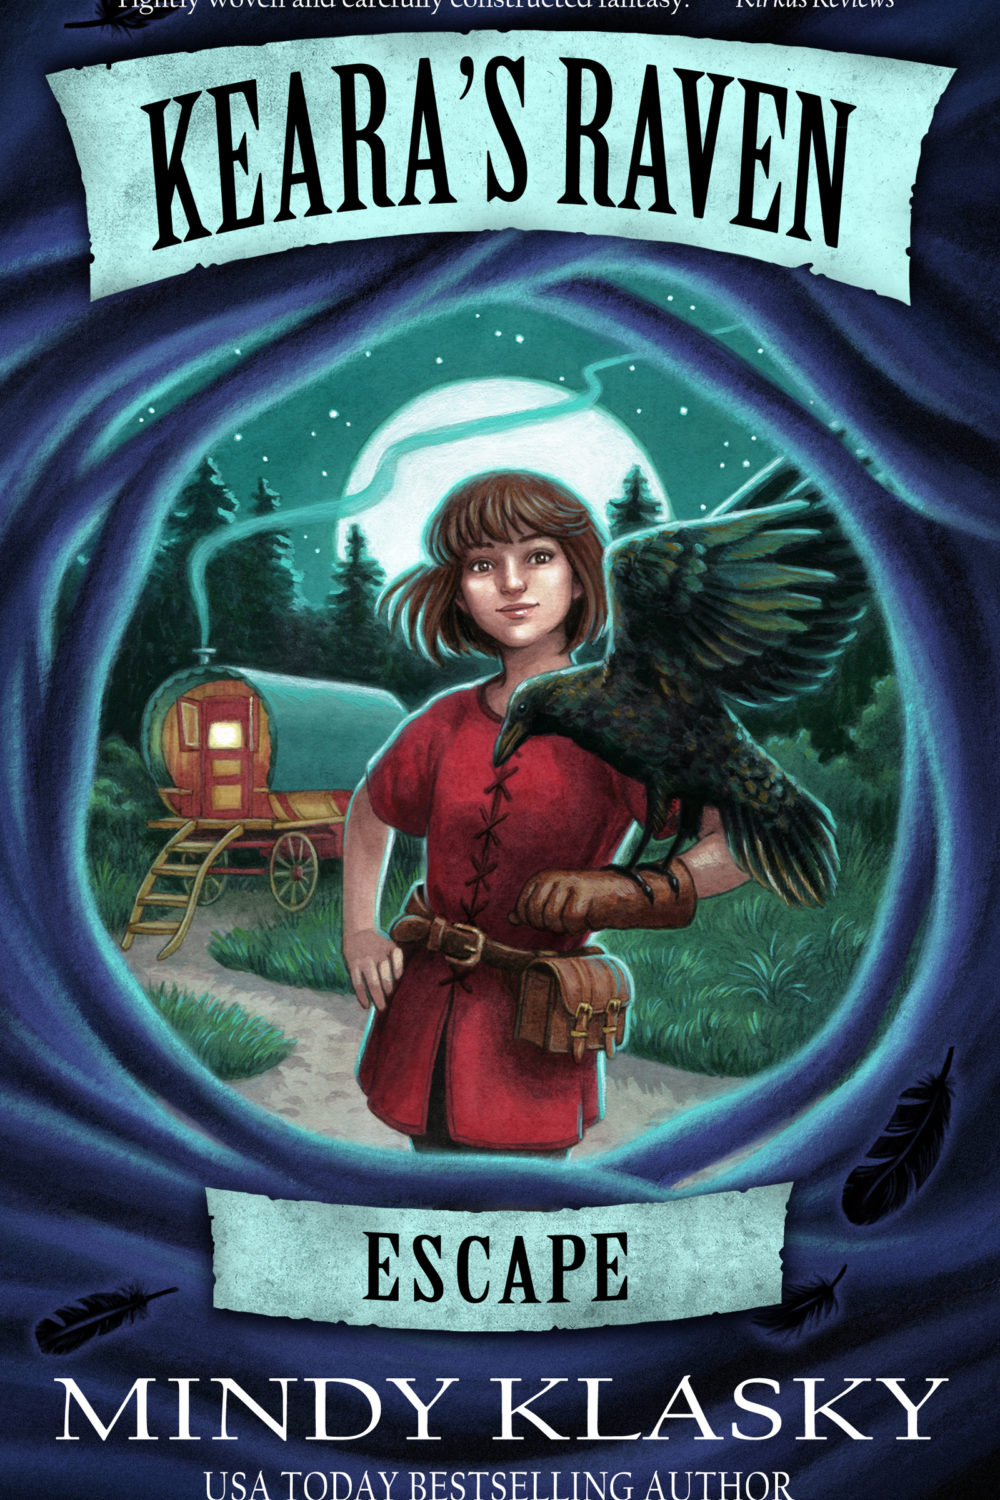 Keara's Raven: Escape by Mindy Klasky